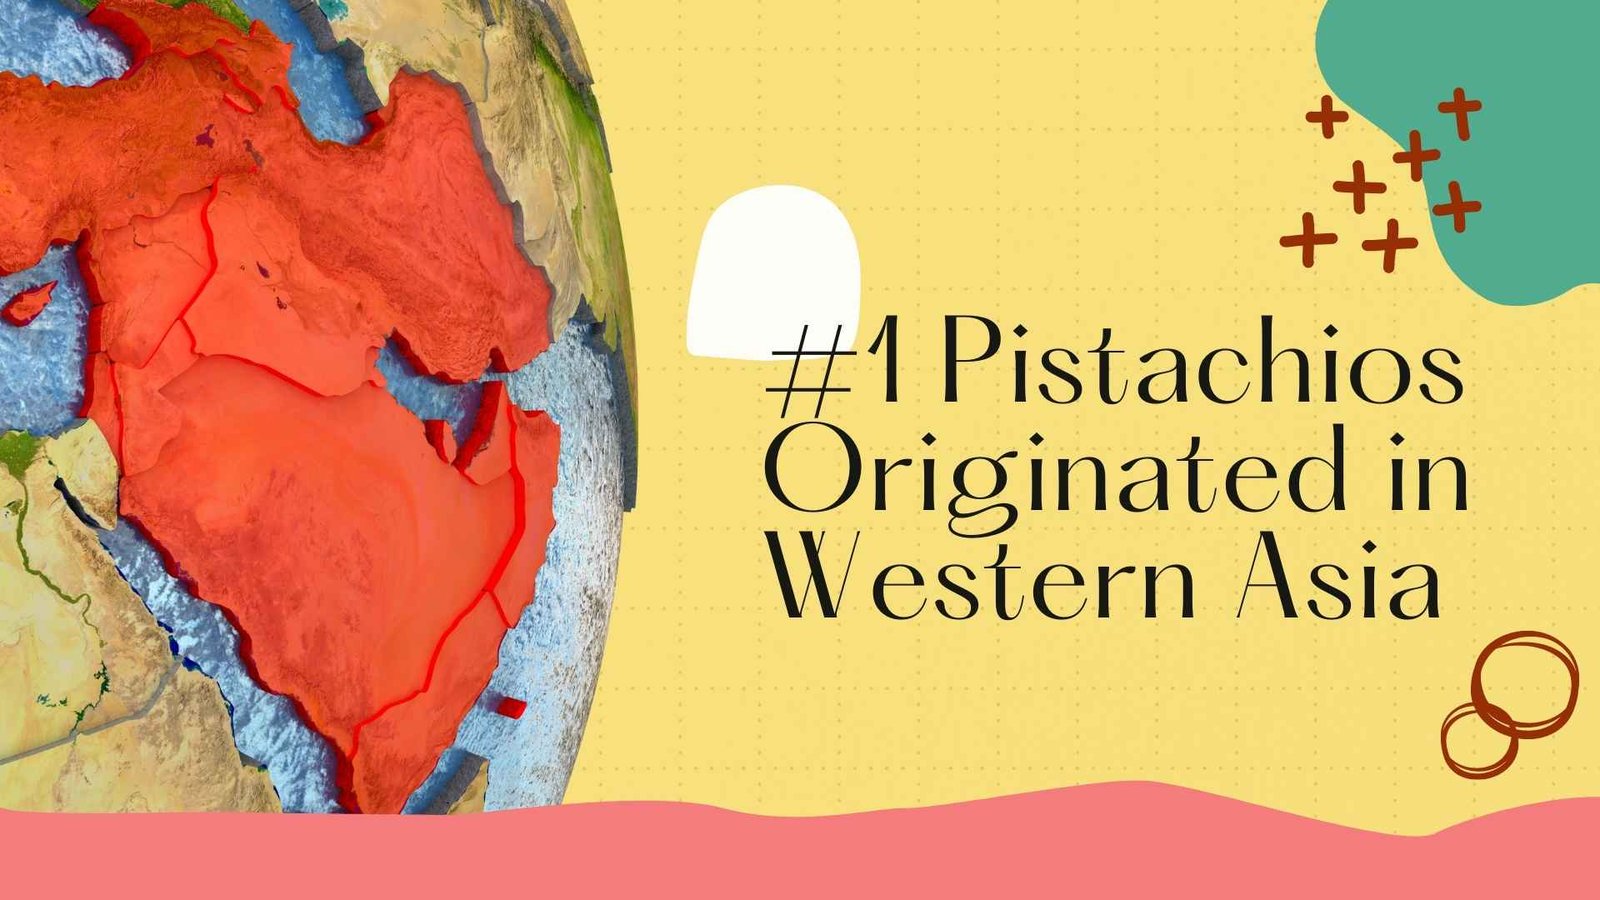 pistachios originated in western asia